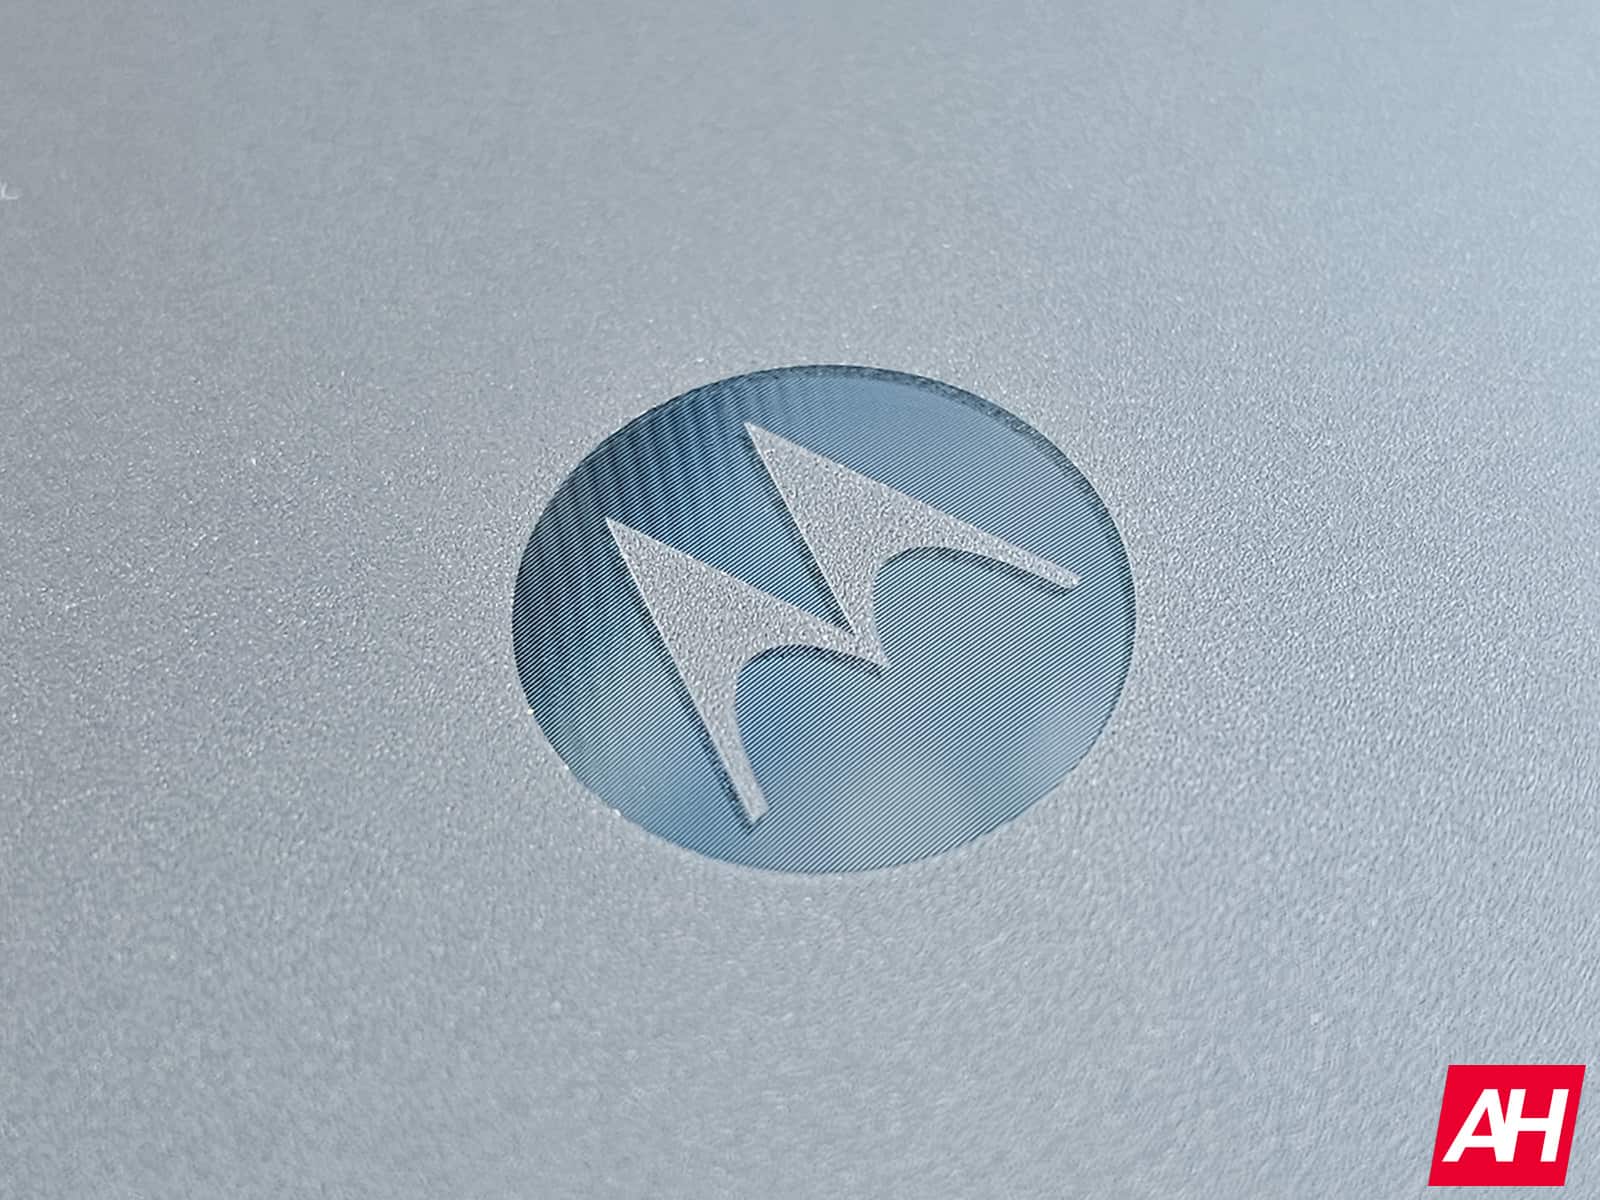 Moto Tag de Motorola listo para su lanzamiento con el signo de aprobación de la FCC